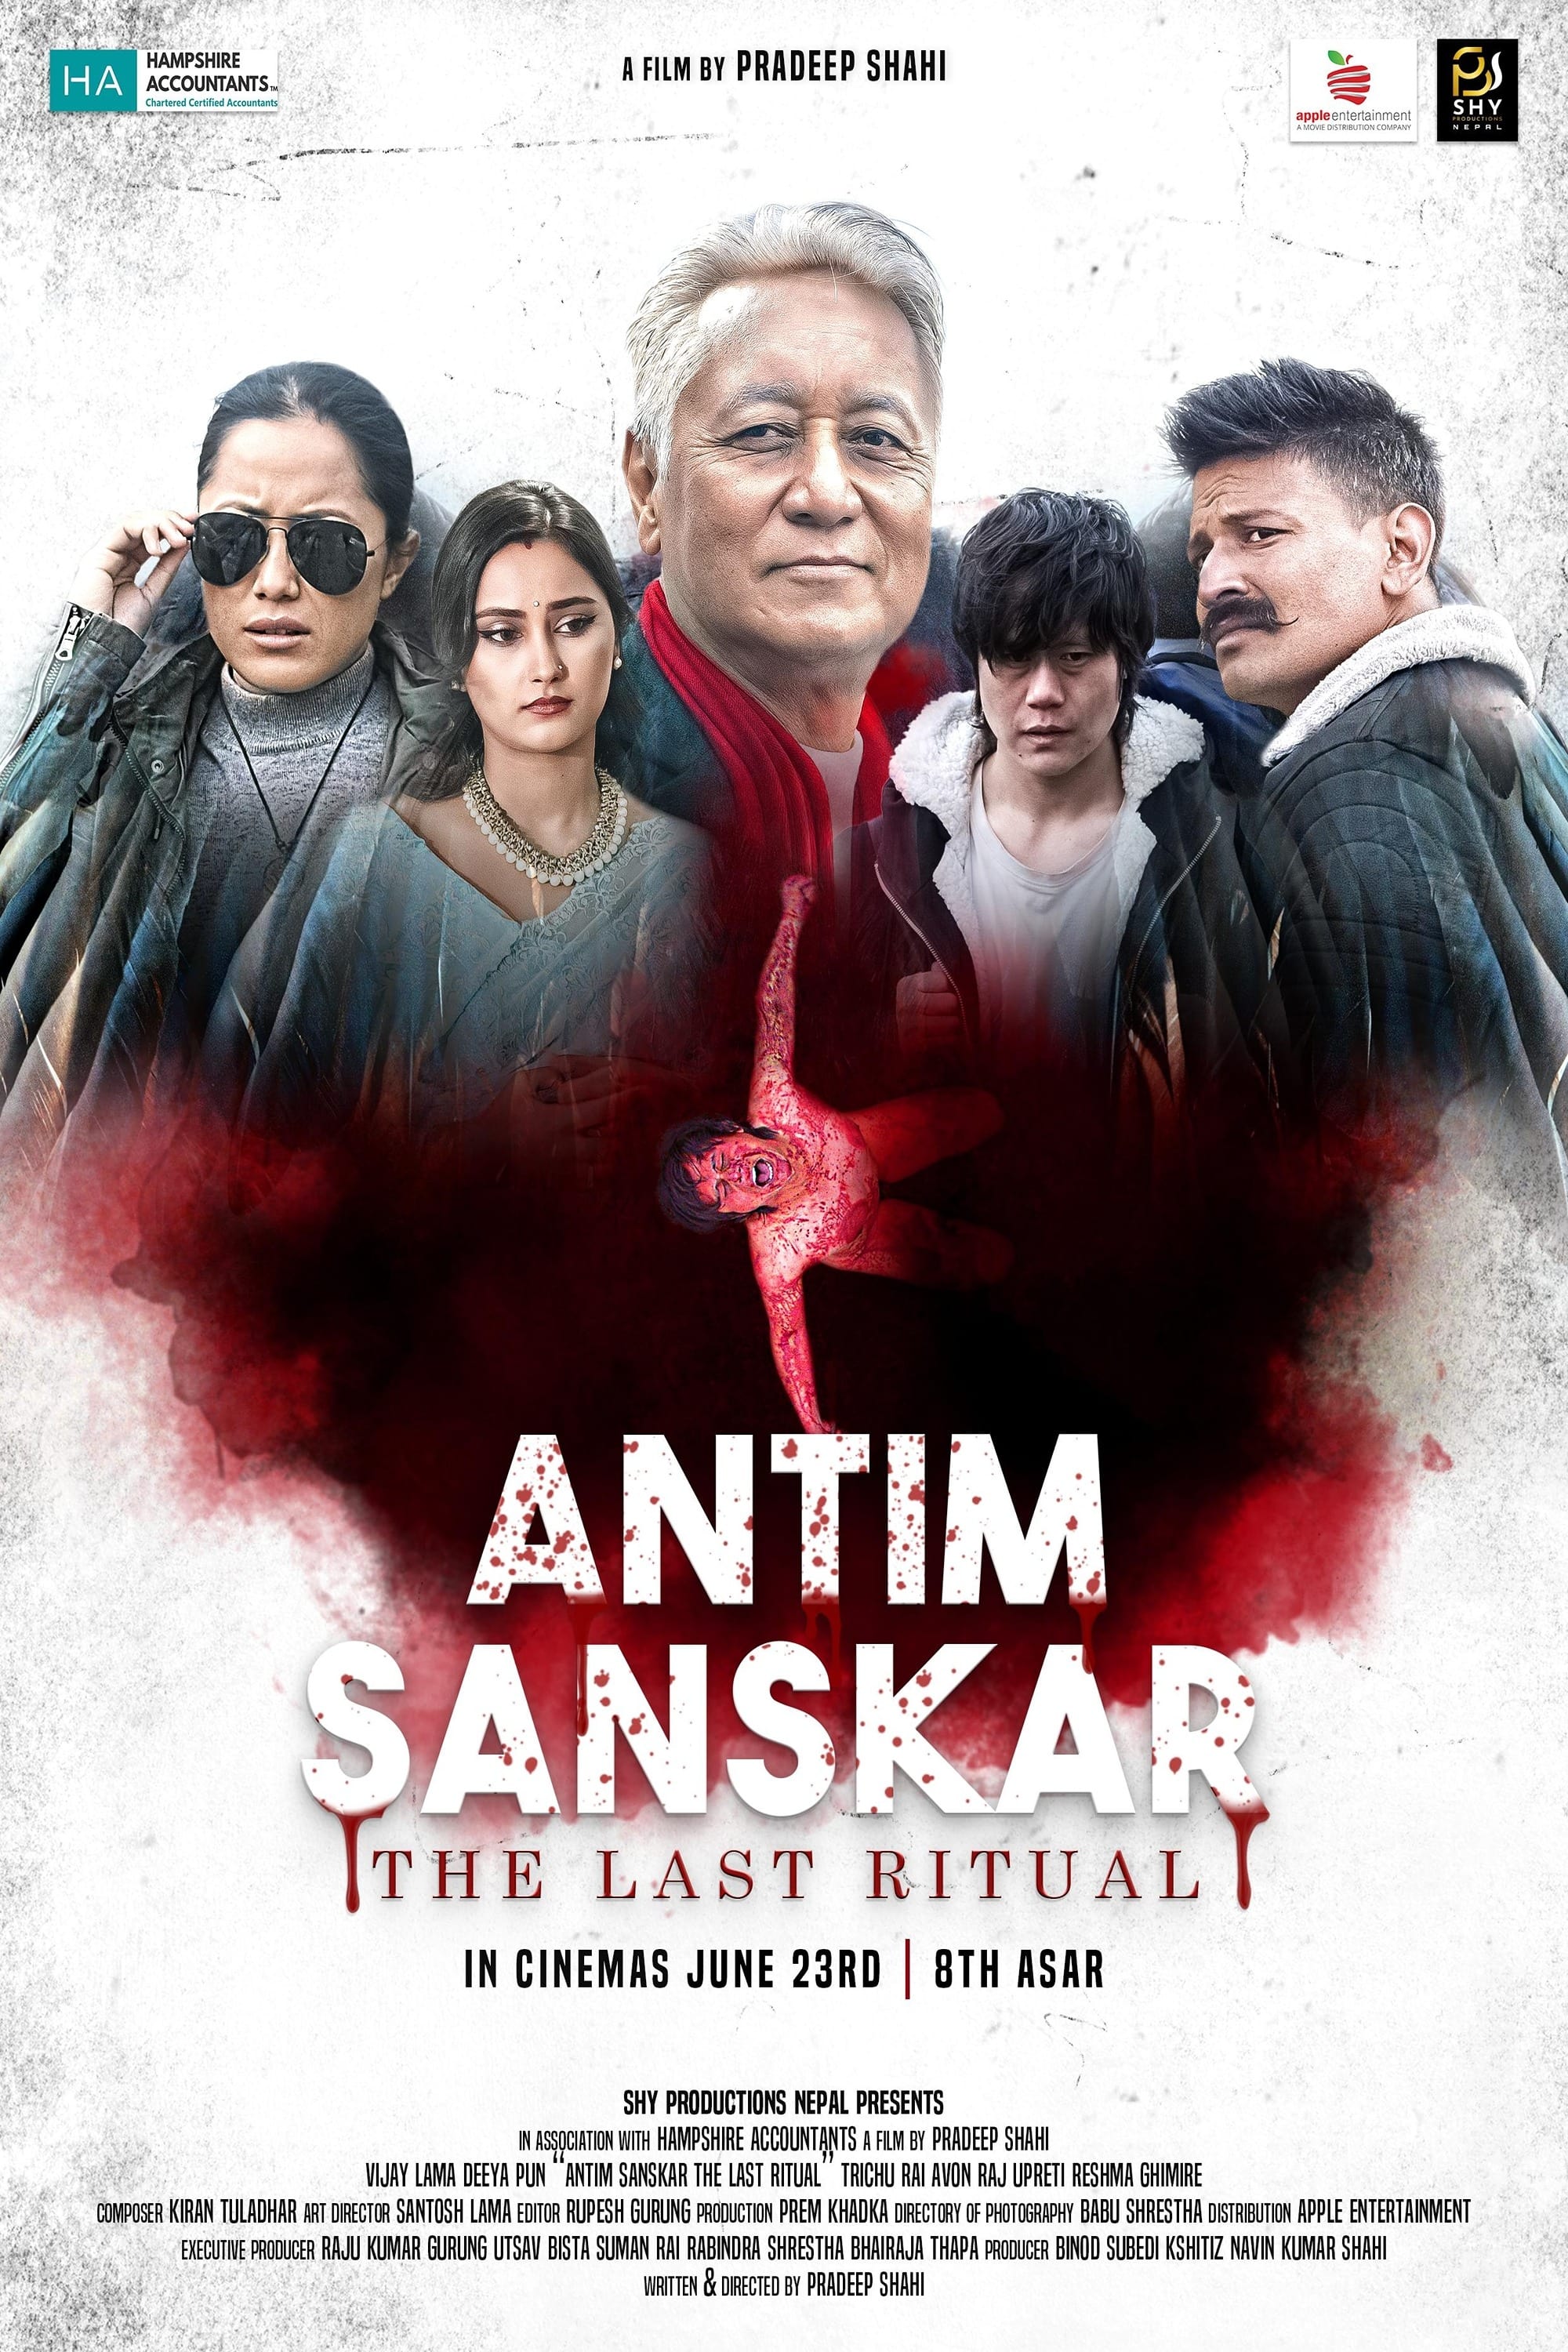 Antim Sanskar: The Last Ritual